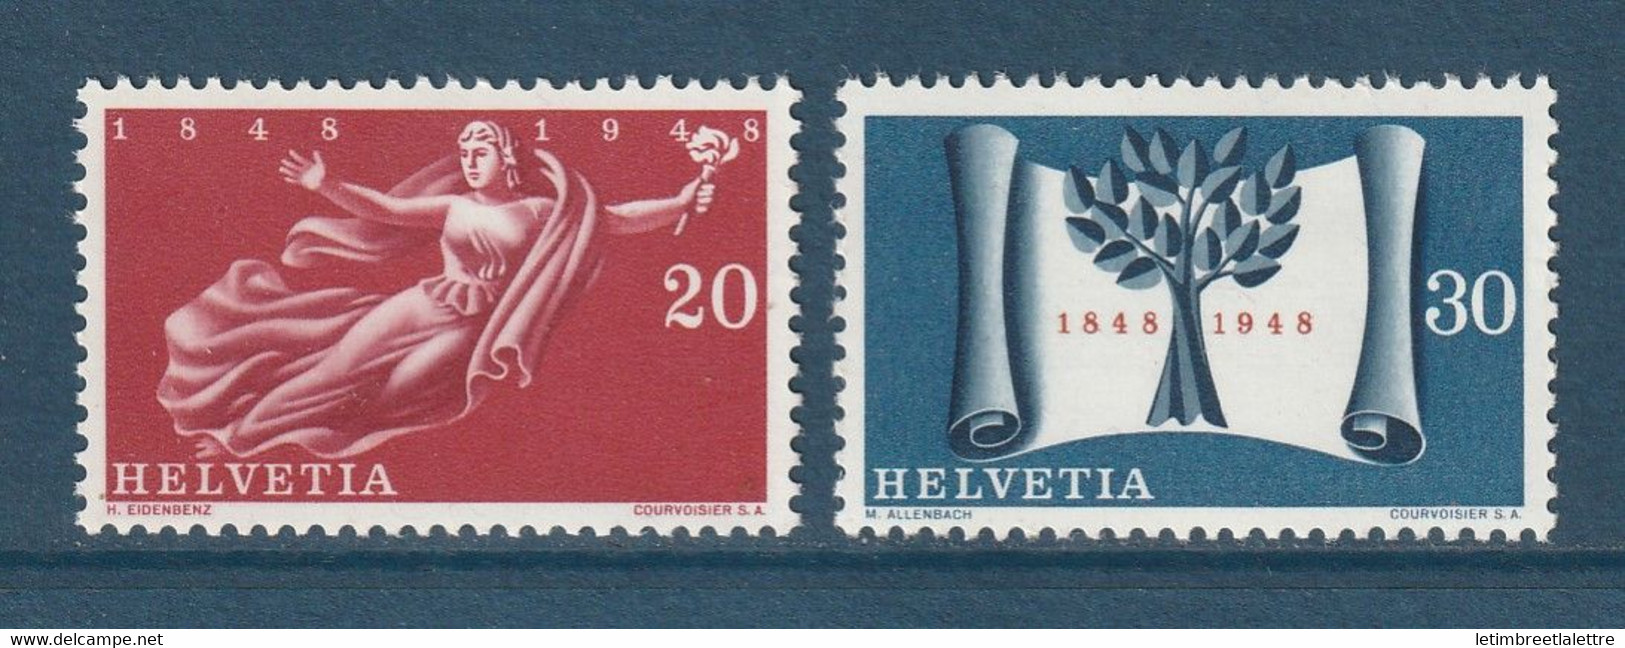 ⭐ Suisse - YT N° 455 Et 456 ** - Neuf Sans Charnière - 1948 ⭐ - Ungebraucht